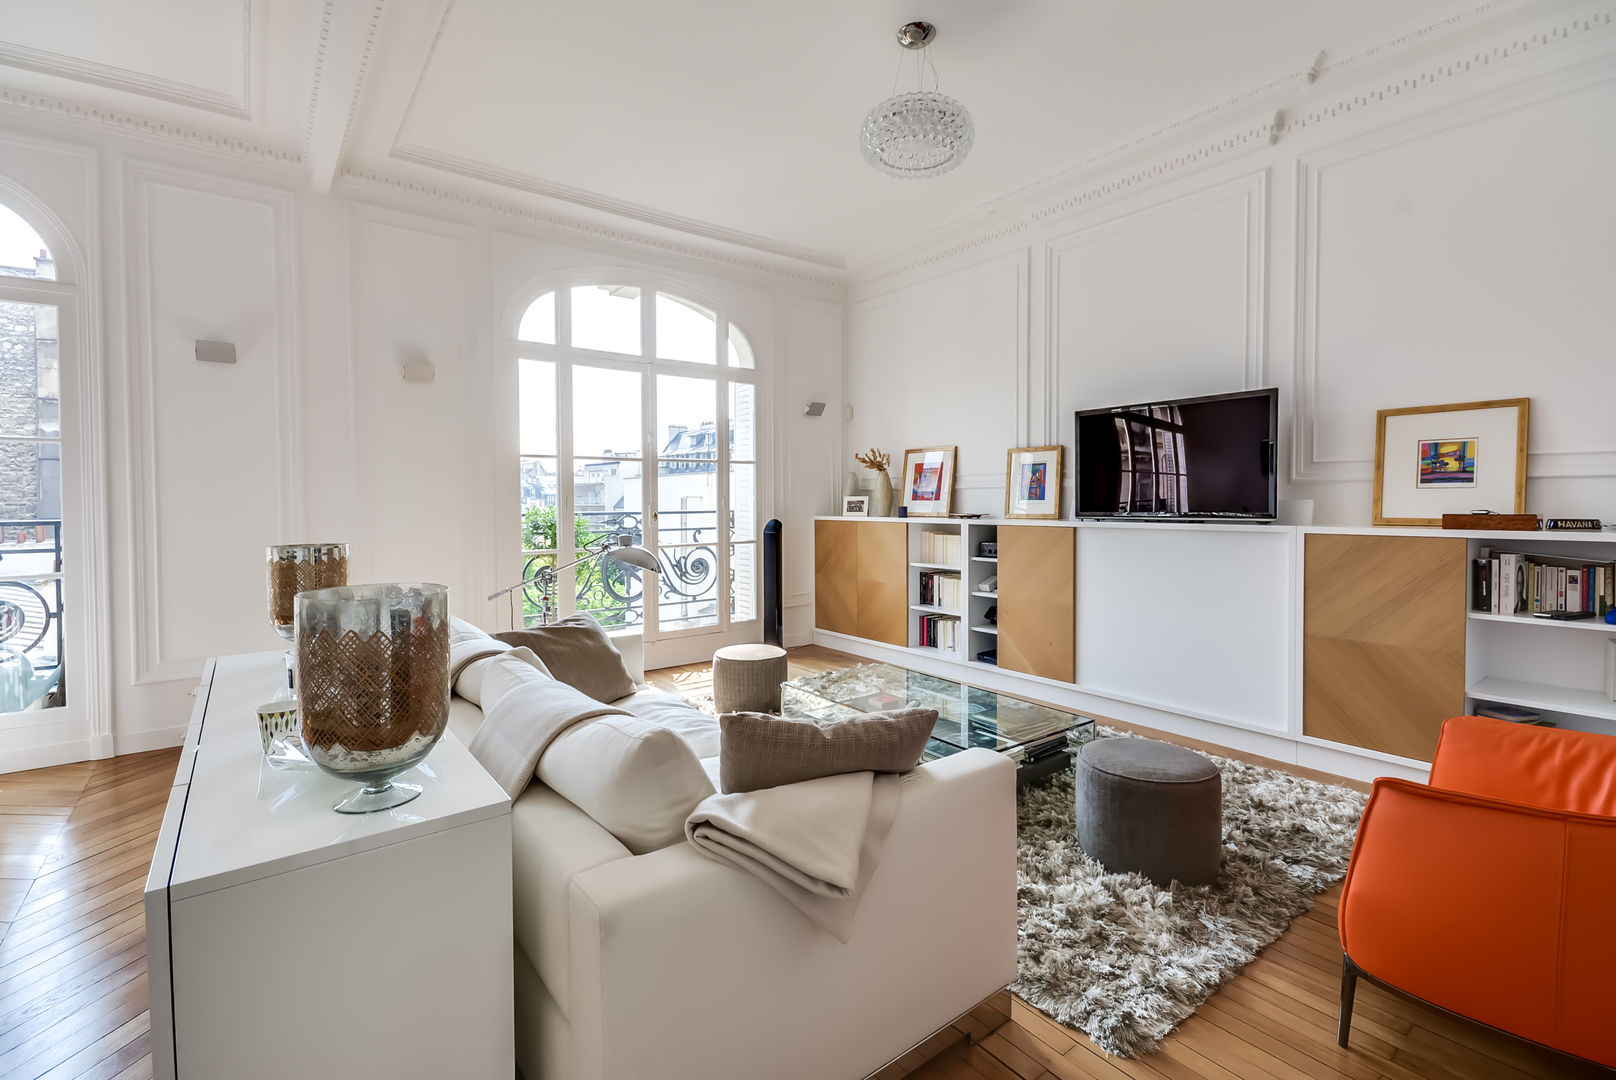 Un appartement haussmanien revisité - Paris 16e, ATELIER FB ATELIER FB Modern living room